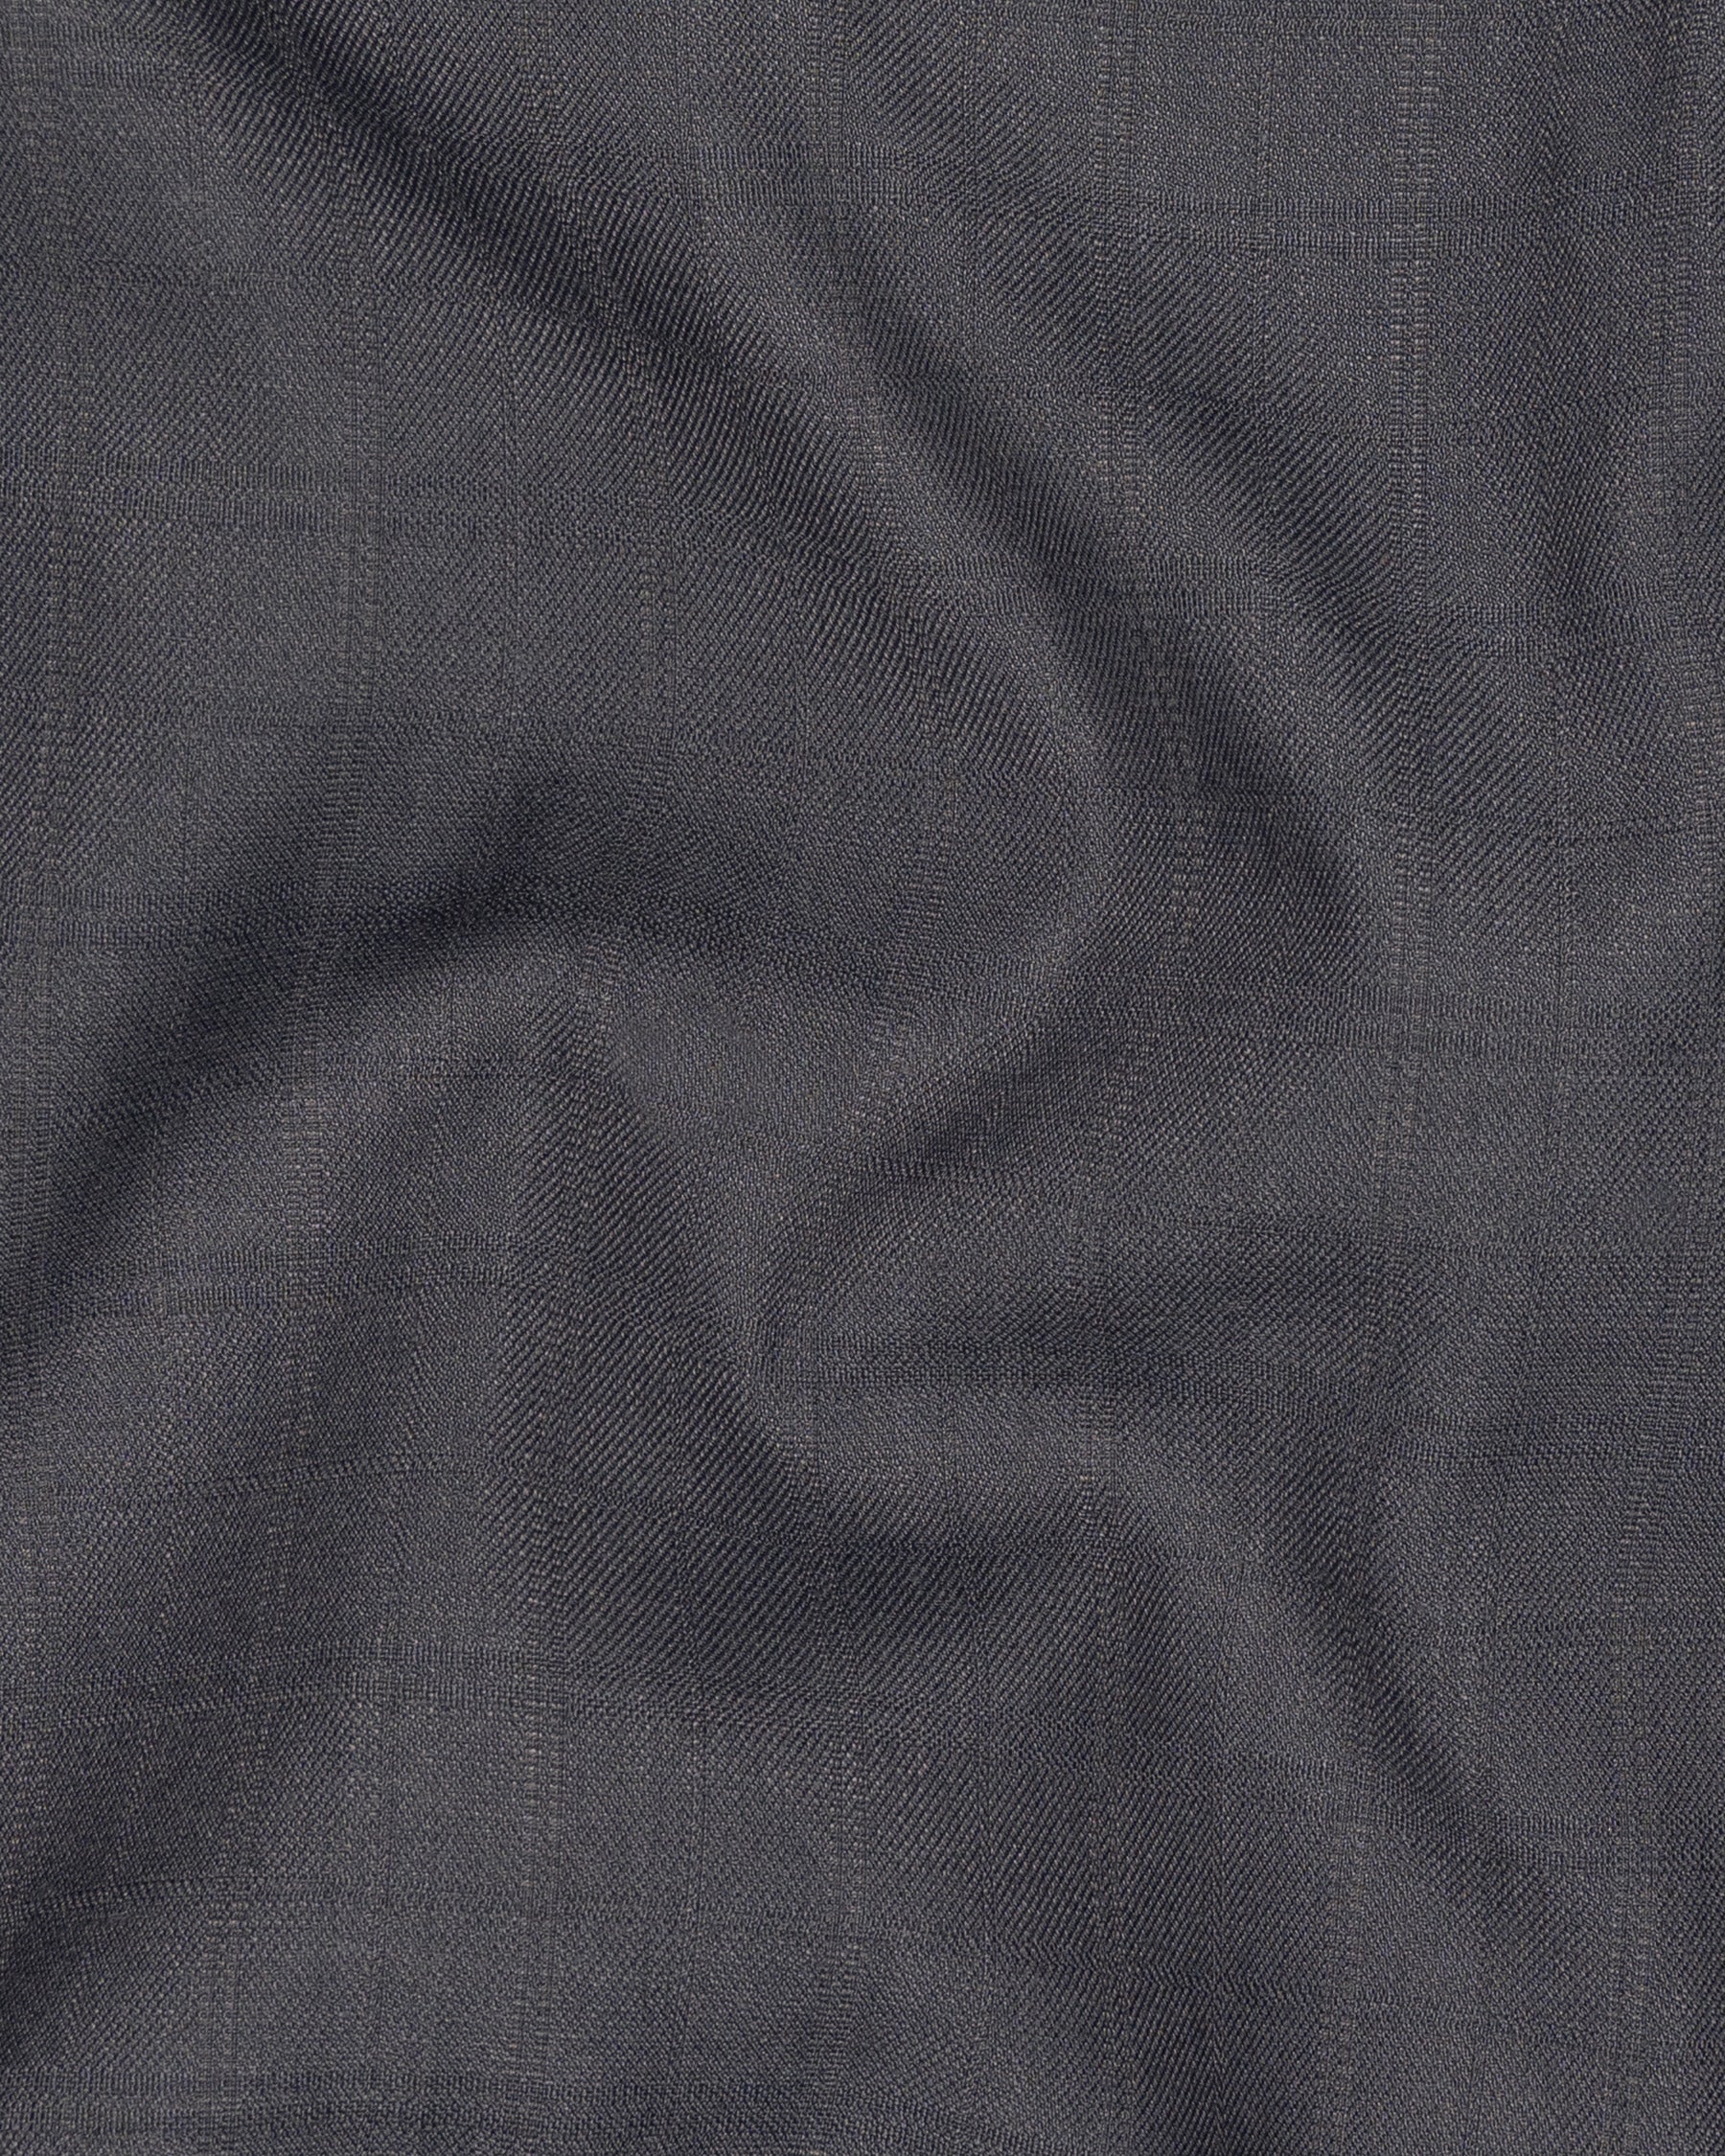 Mulled grey subtle Plaid Cross Placket Bandhgala Wool Rich Blazer